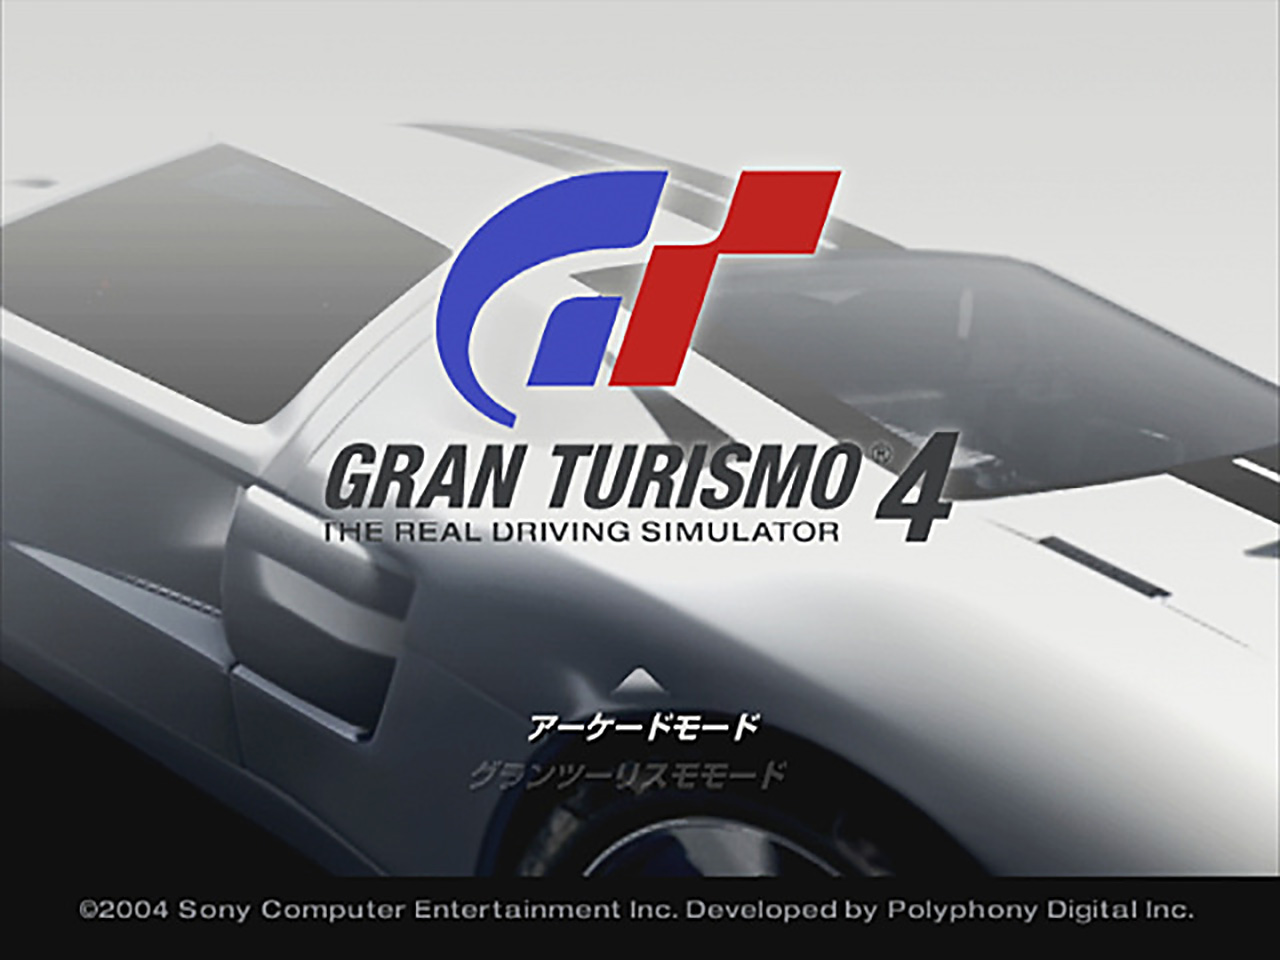 Setelah Hampir 20 Tahun, Baru Ketahuan Ada Cheat Game Gran Turismo 4